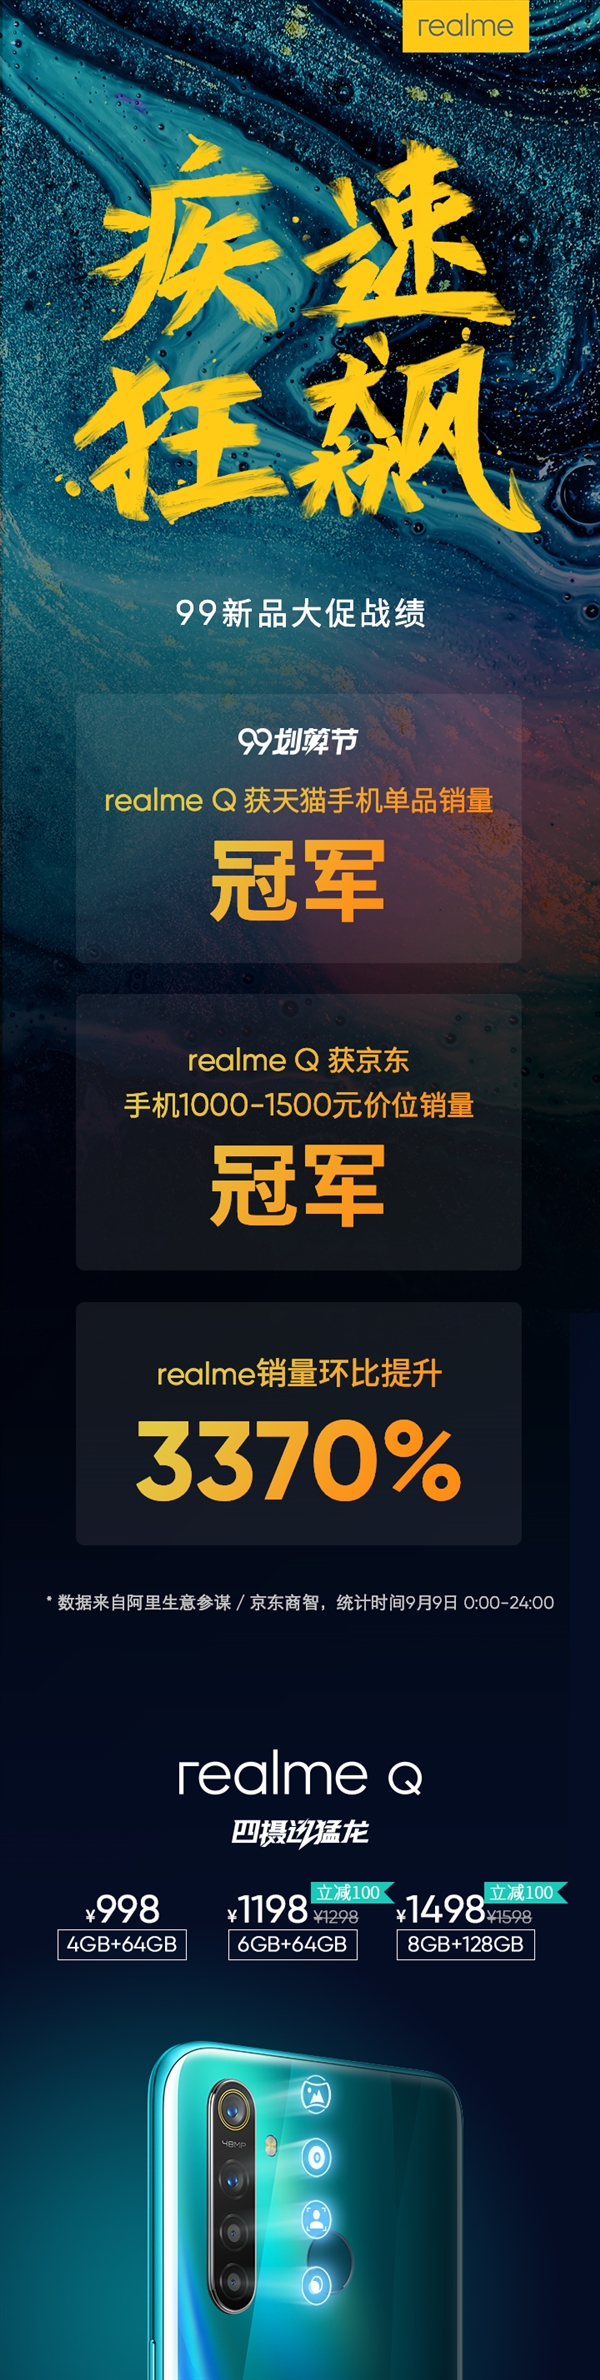 realme Q战报出炉：天猫单品+京东1000-1500元档销量冠军